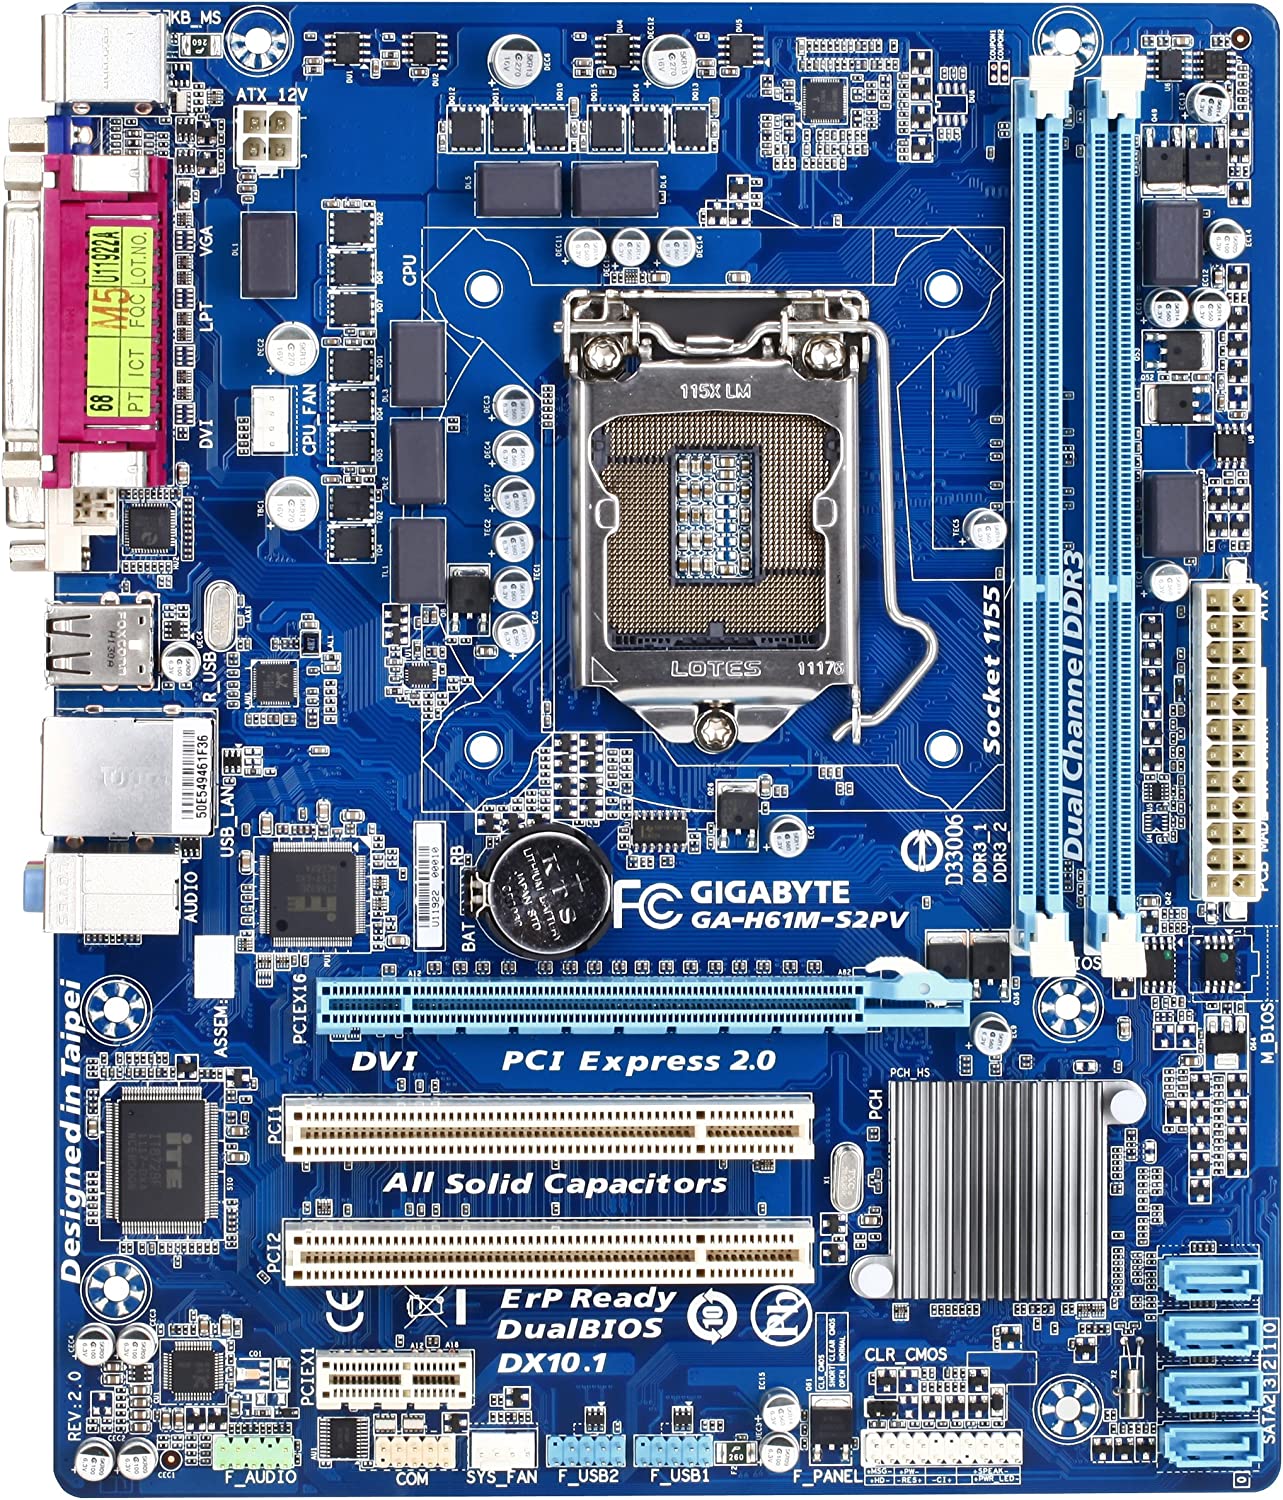 Gigabyte h61 m-s2pv LGA 1155 Intel H61 Micro ATX 1333 placa base Intel